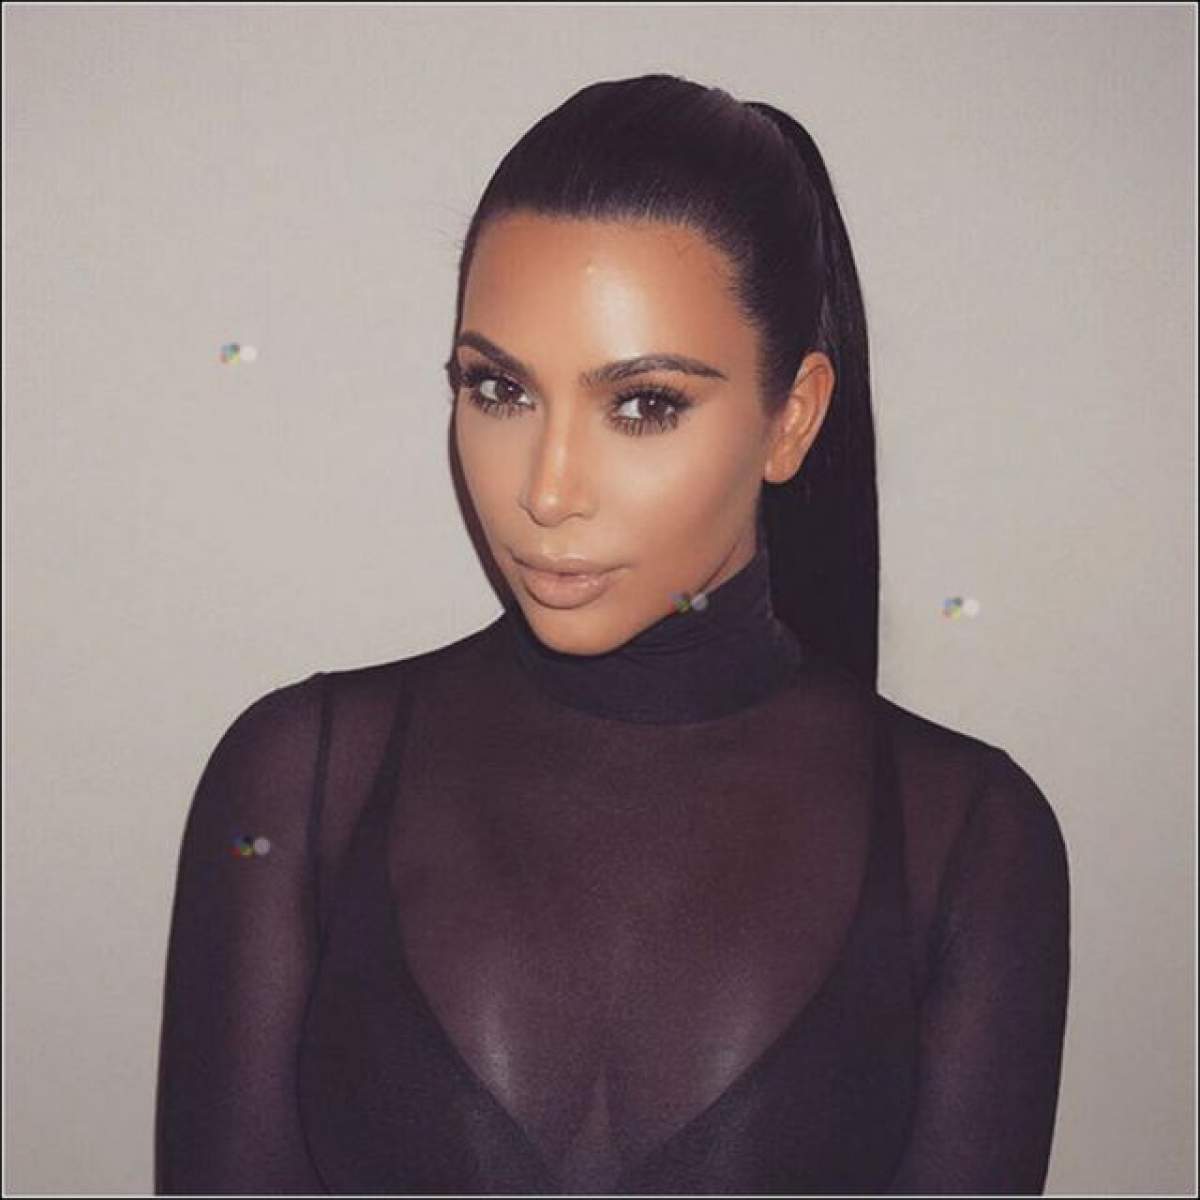 FOTO / Kim Kardashian şi-a schimbat look-ul radical! Vedeta a renunţat la părul brunet